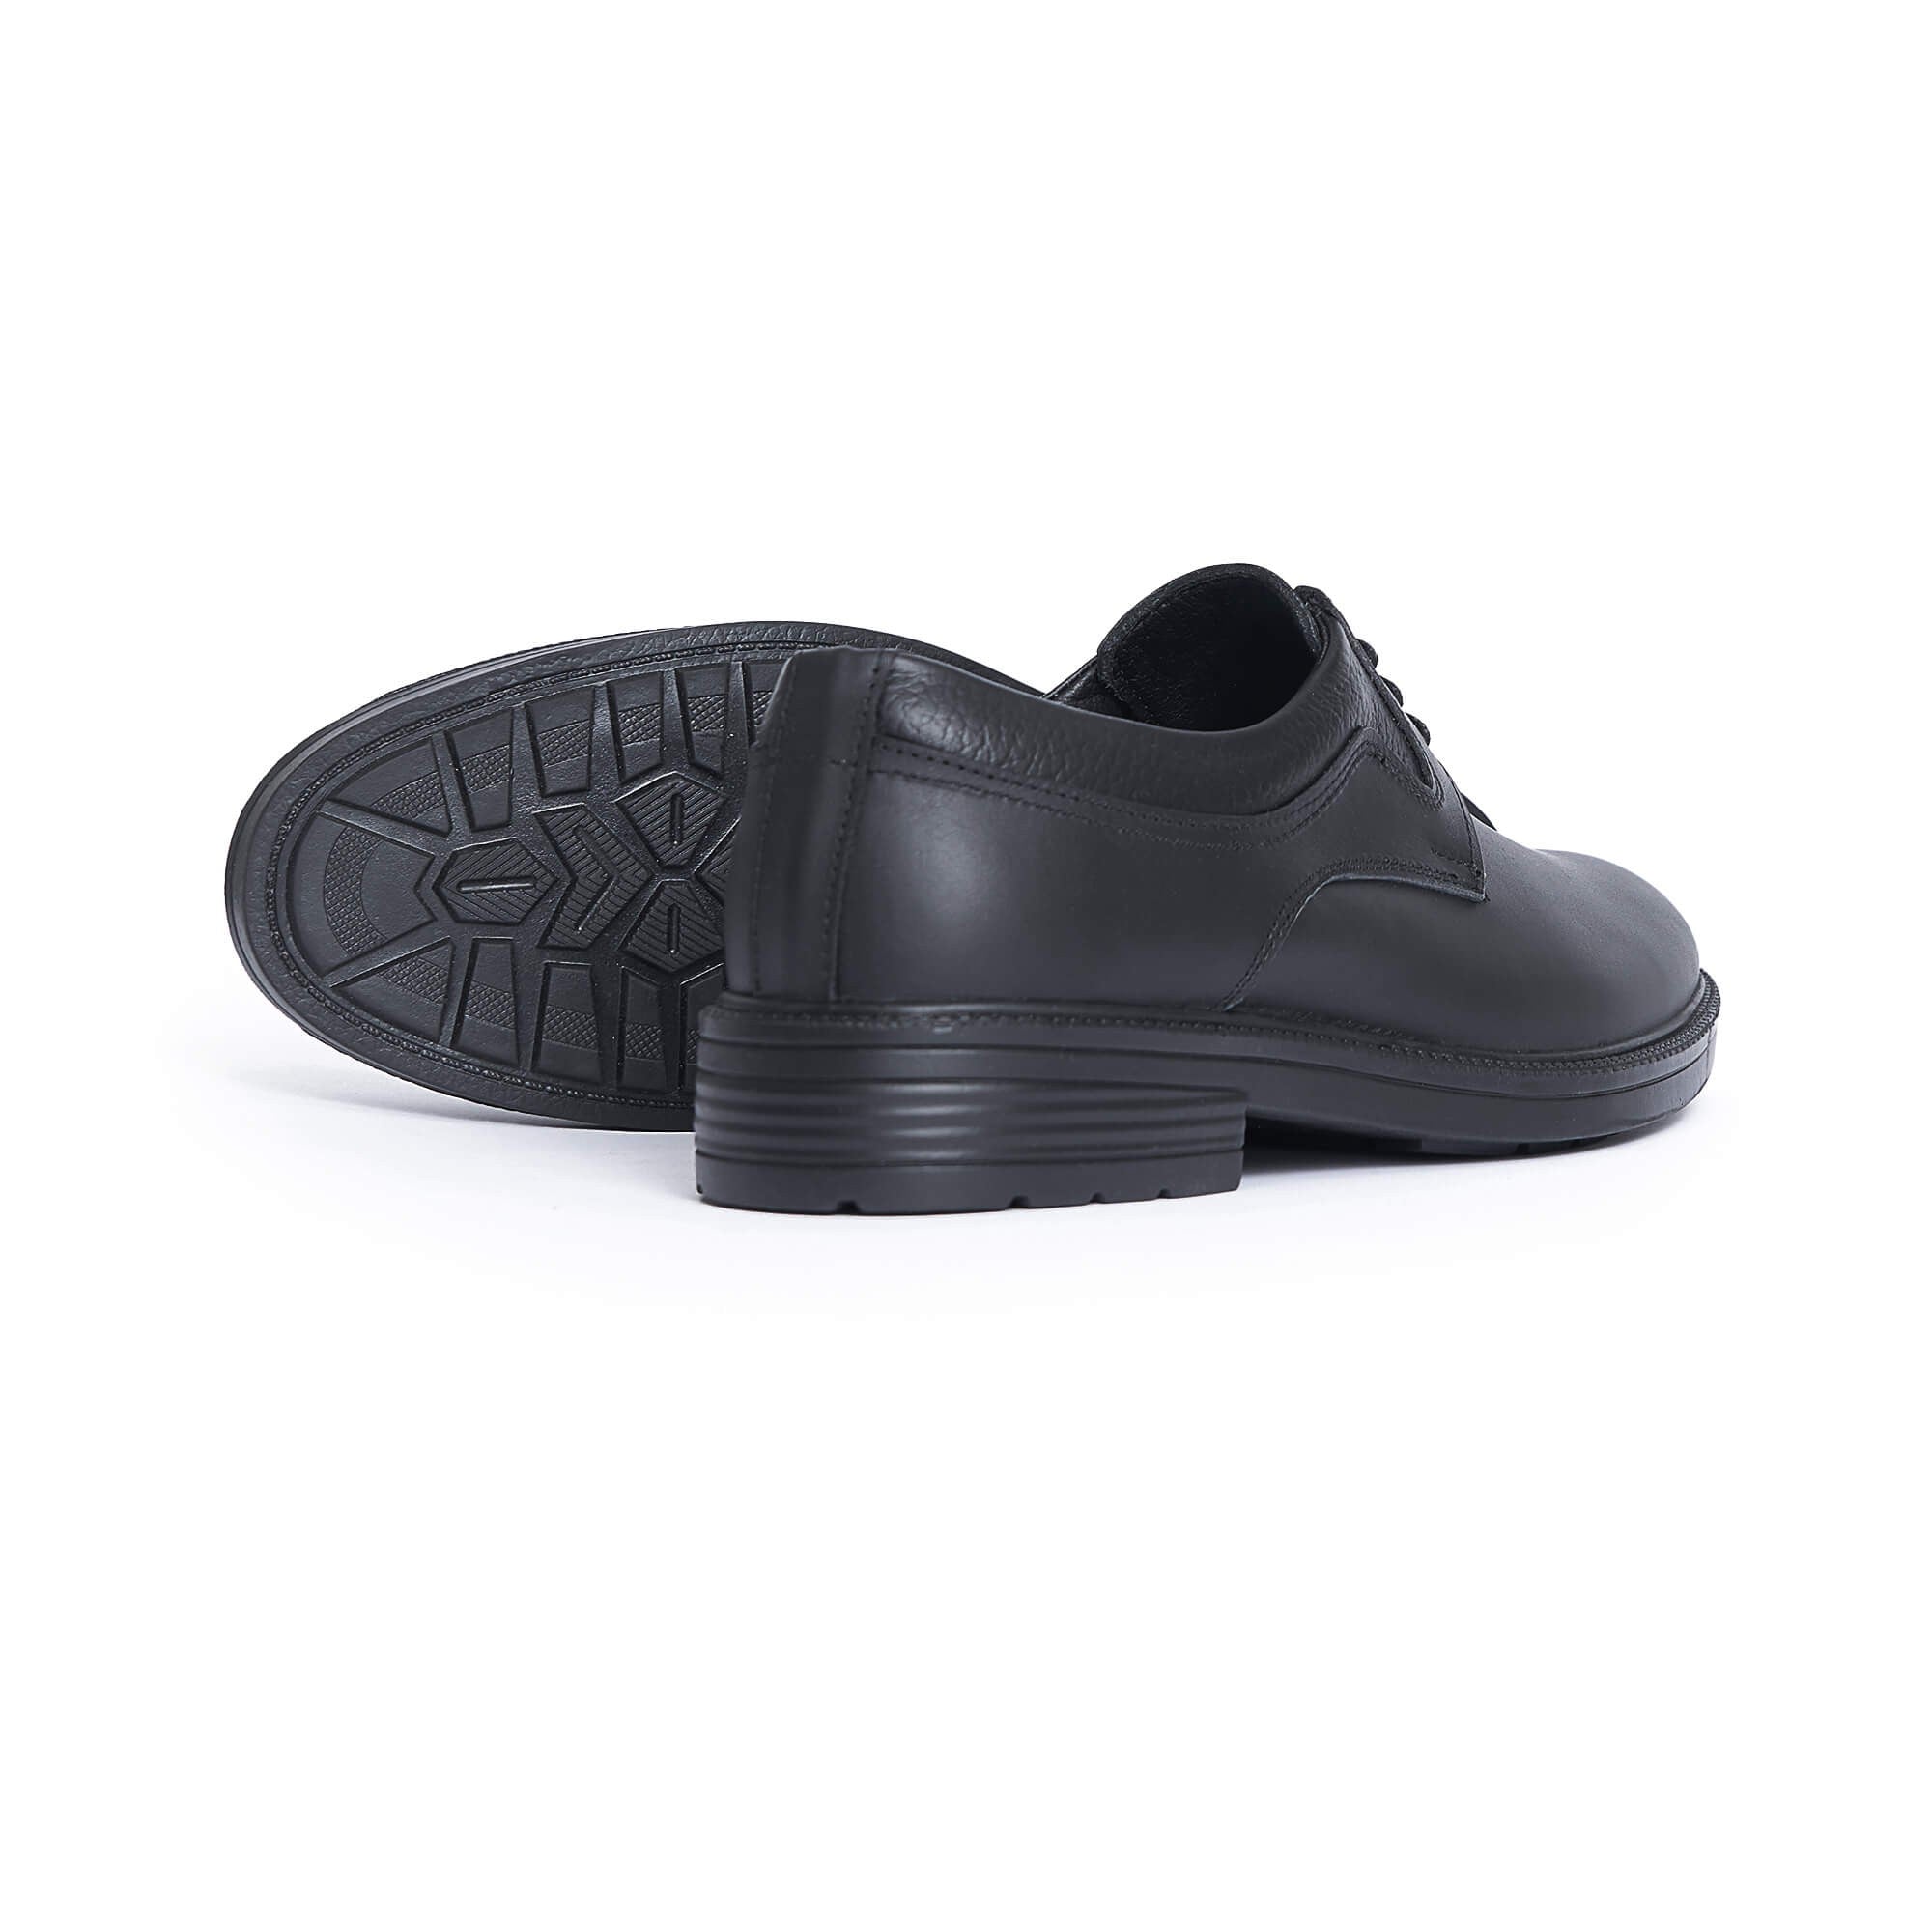 Men's  Oxford Shoes - Black Color.